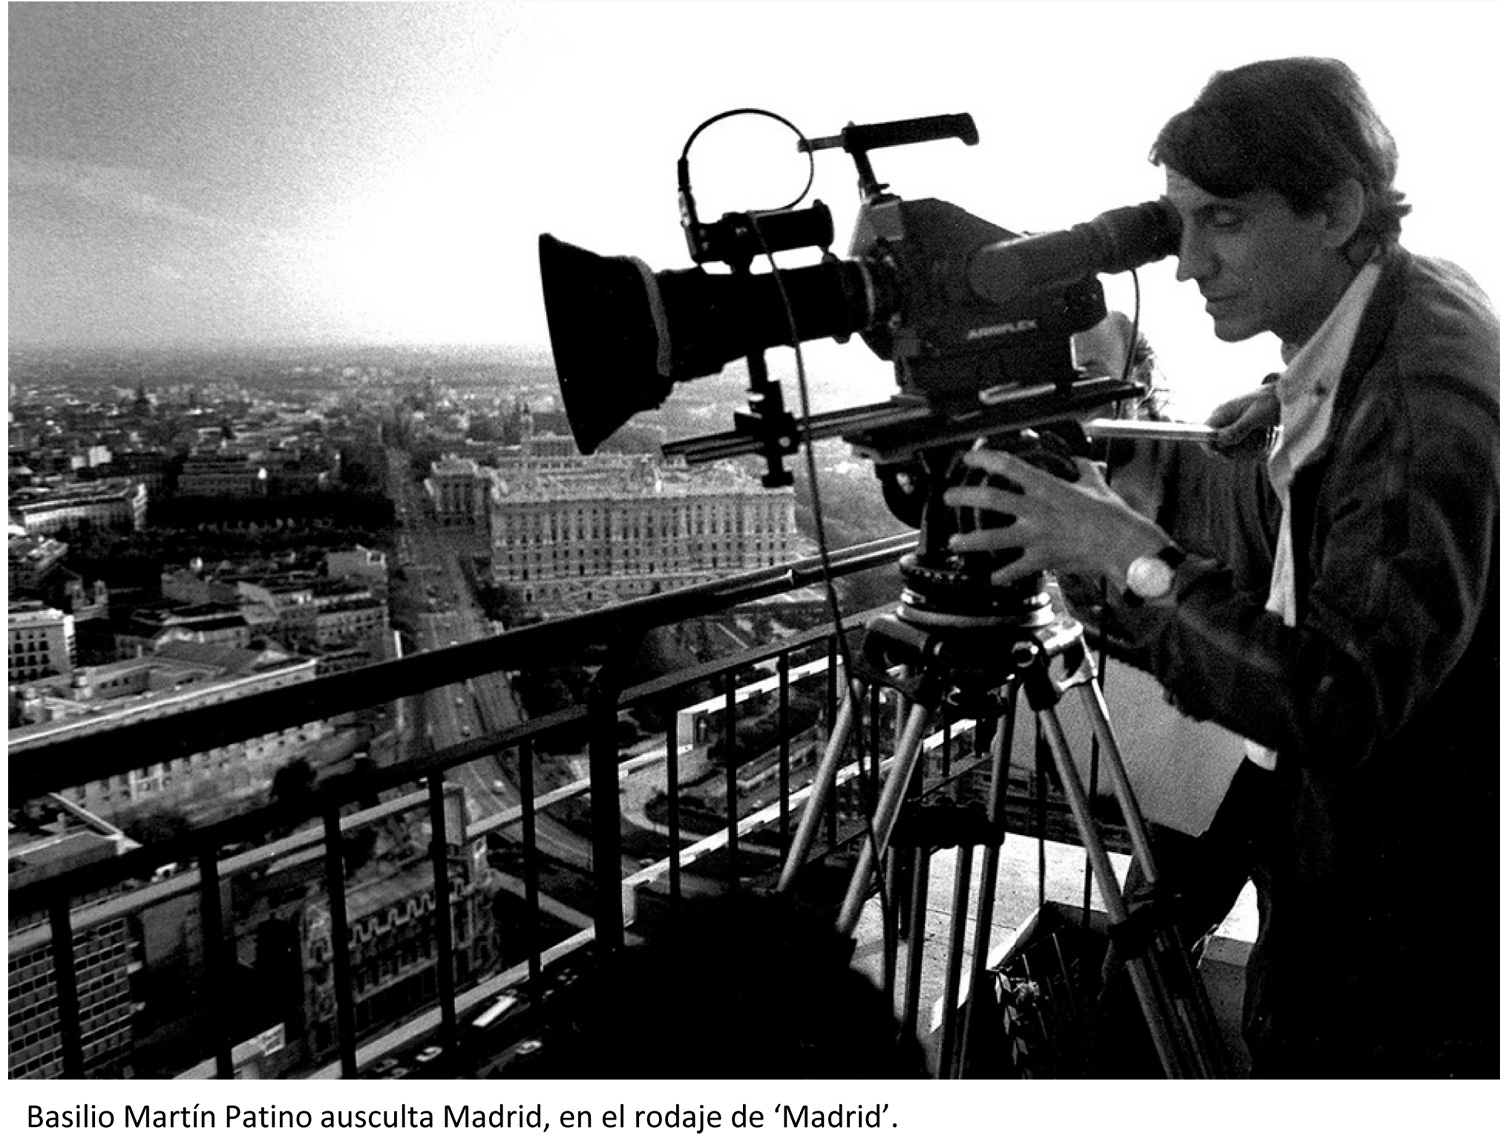 Basilio Martín Patino ausculta Madrid en el rodaje de 'Madrid'.